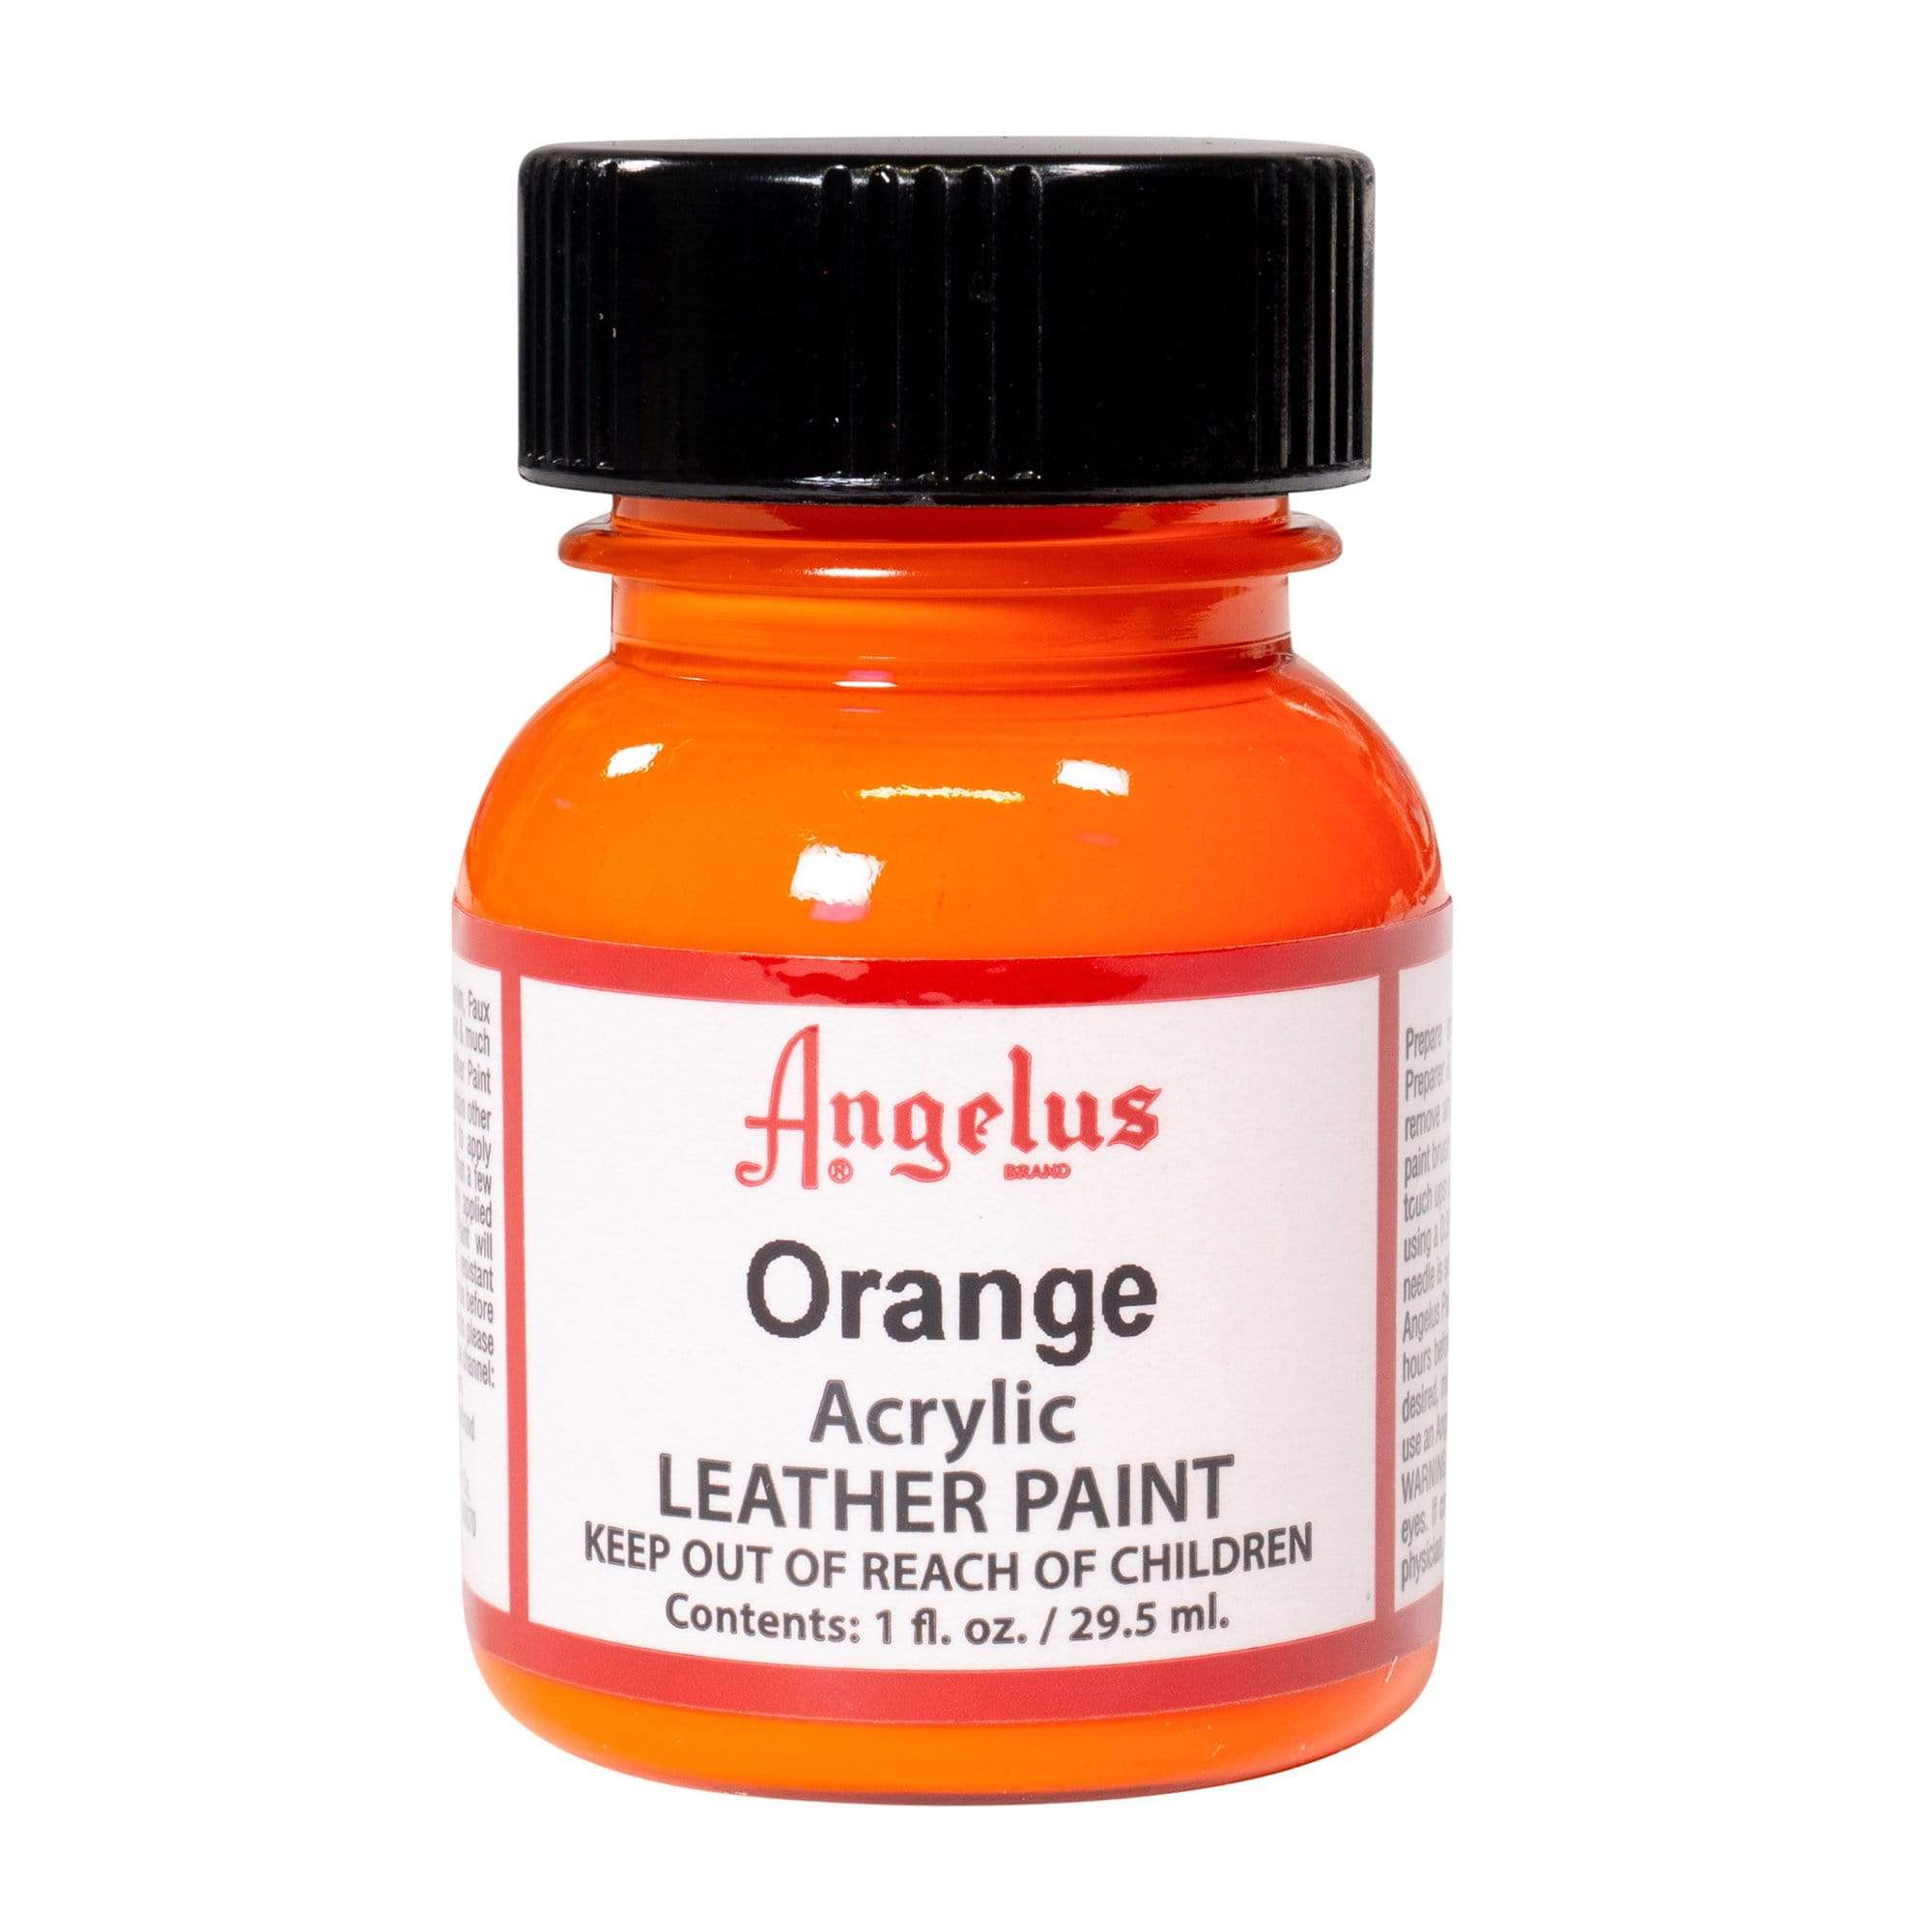 Angelus Acrylic Leather Paint - Orange, 1 oz